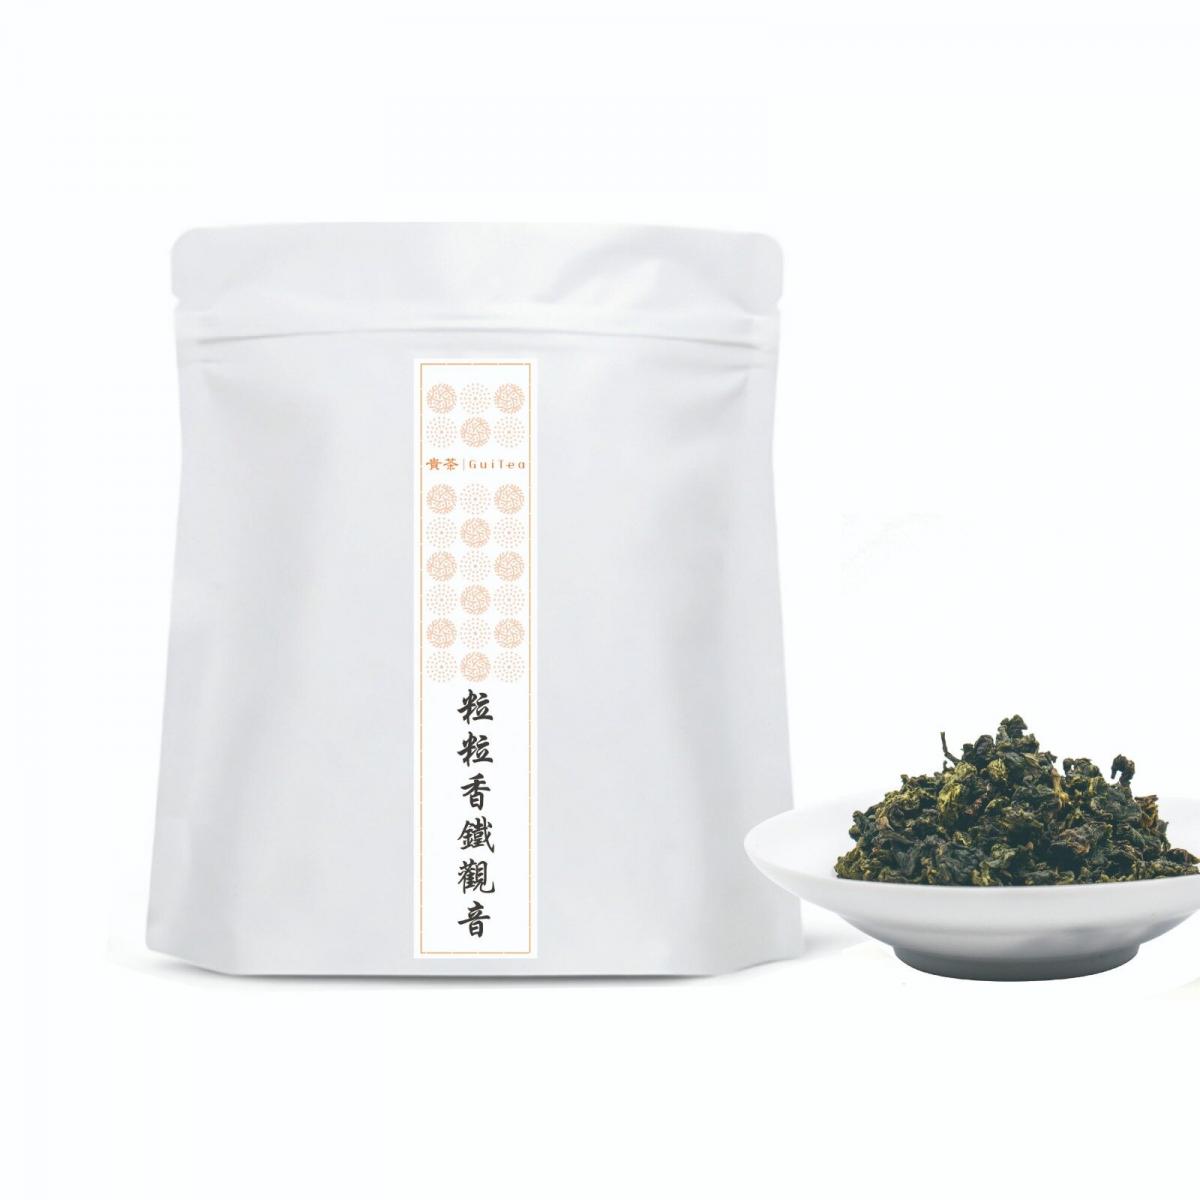 Special Grade Tie Guan Yin Tea